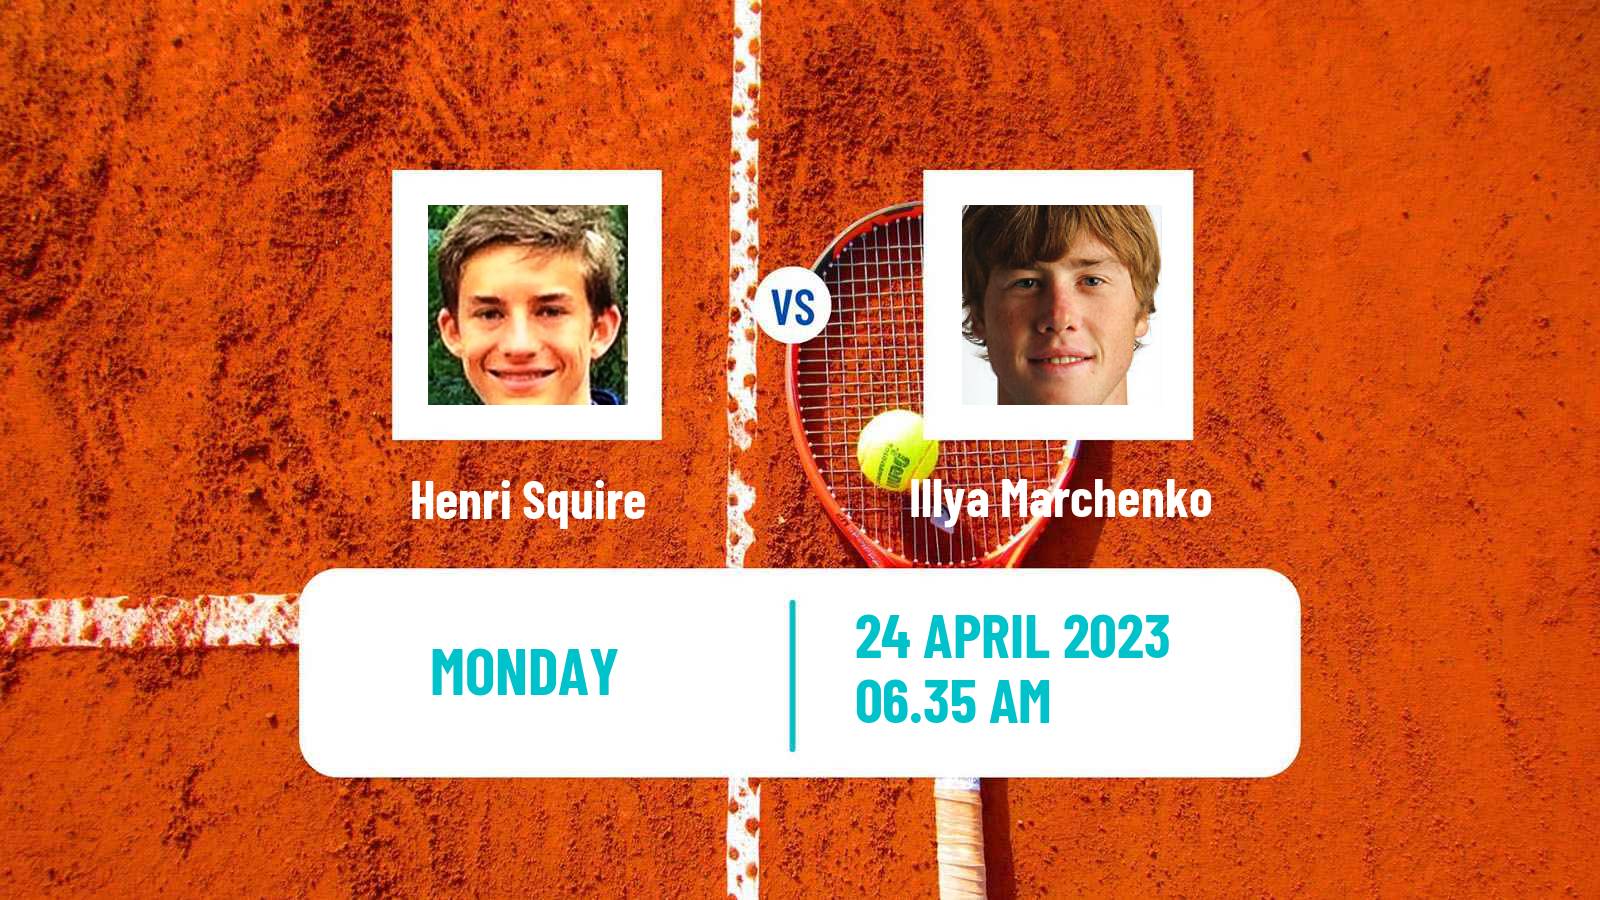 Tennis ATP Challenger Henri Squire - Illya Marchenko